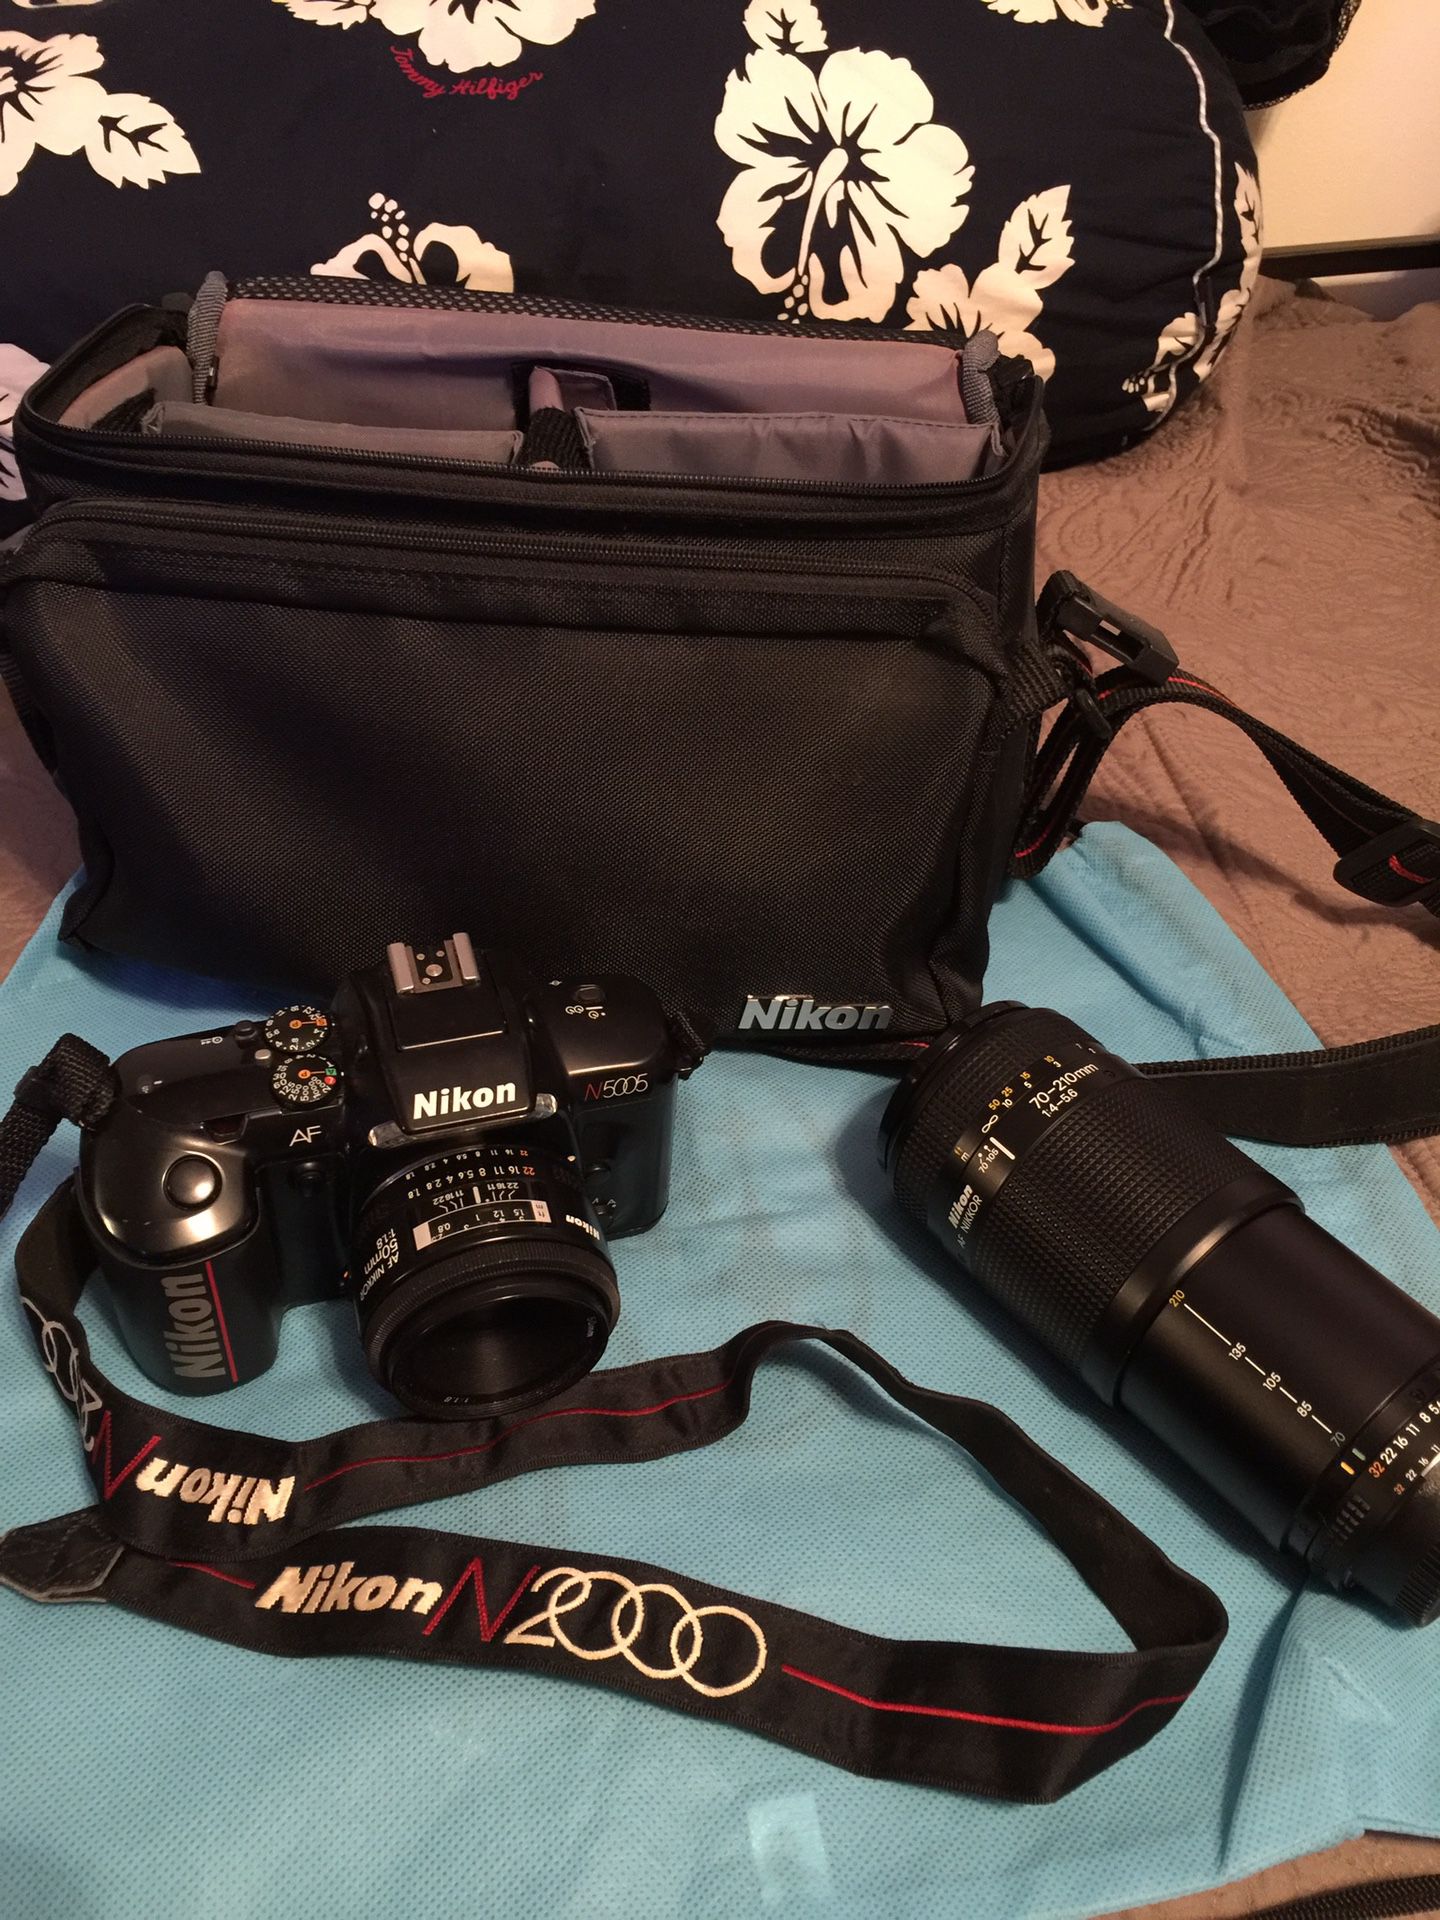 Nikon N5005 camera bundle with two lens and bag